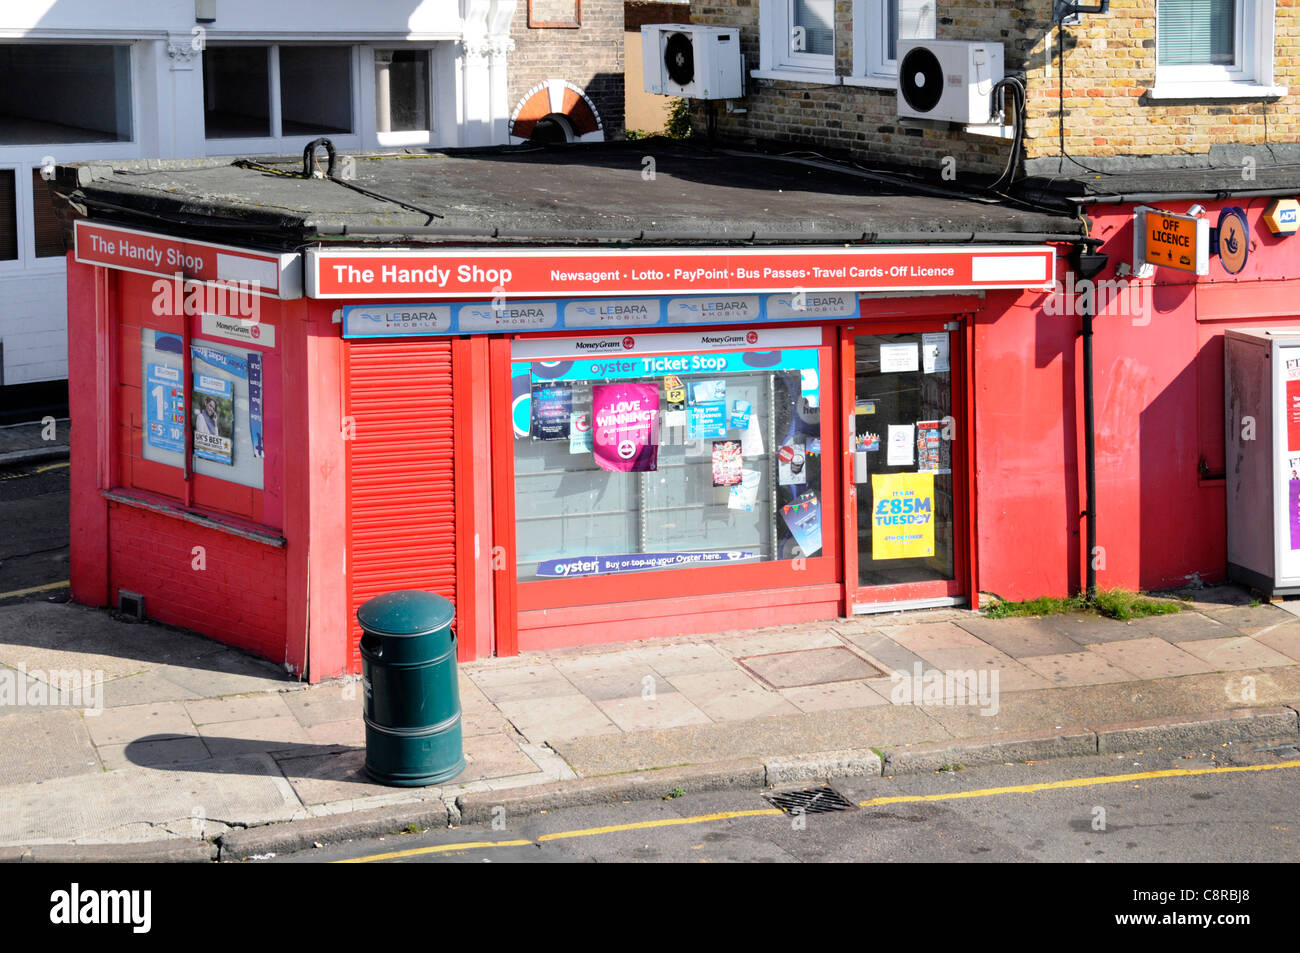 Vue d'en haut sur « The Handy Shop » local Magasin de proximité magasin d'angle commerce de détail Lewisham Londres Angleterre Royaume-Uni Banque D'Images